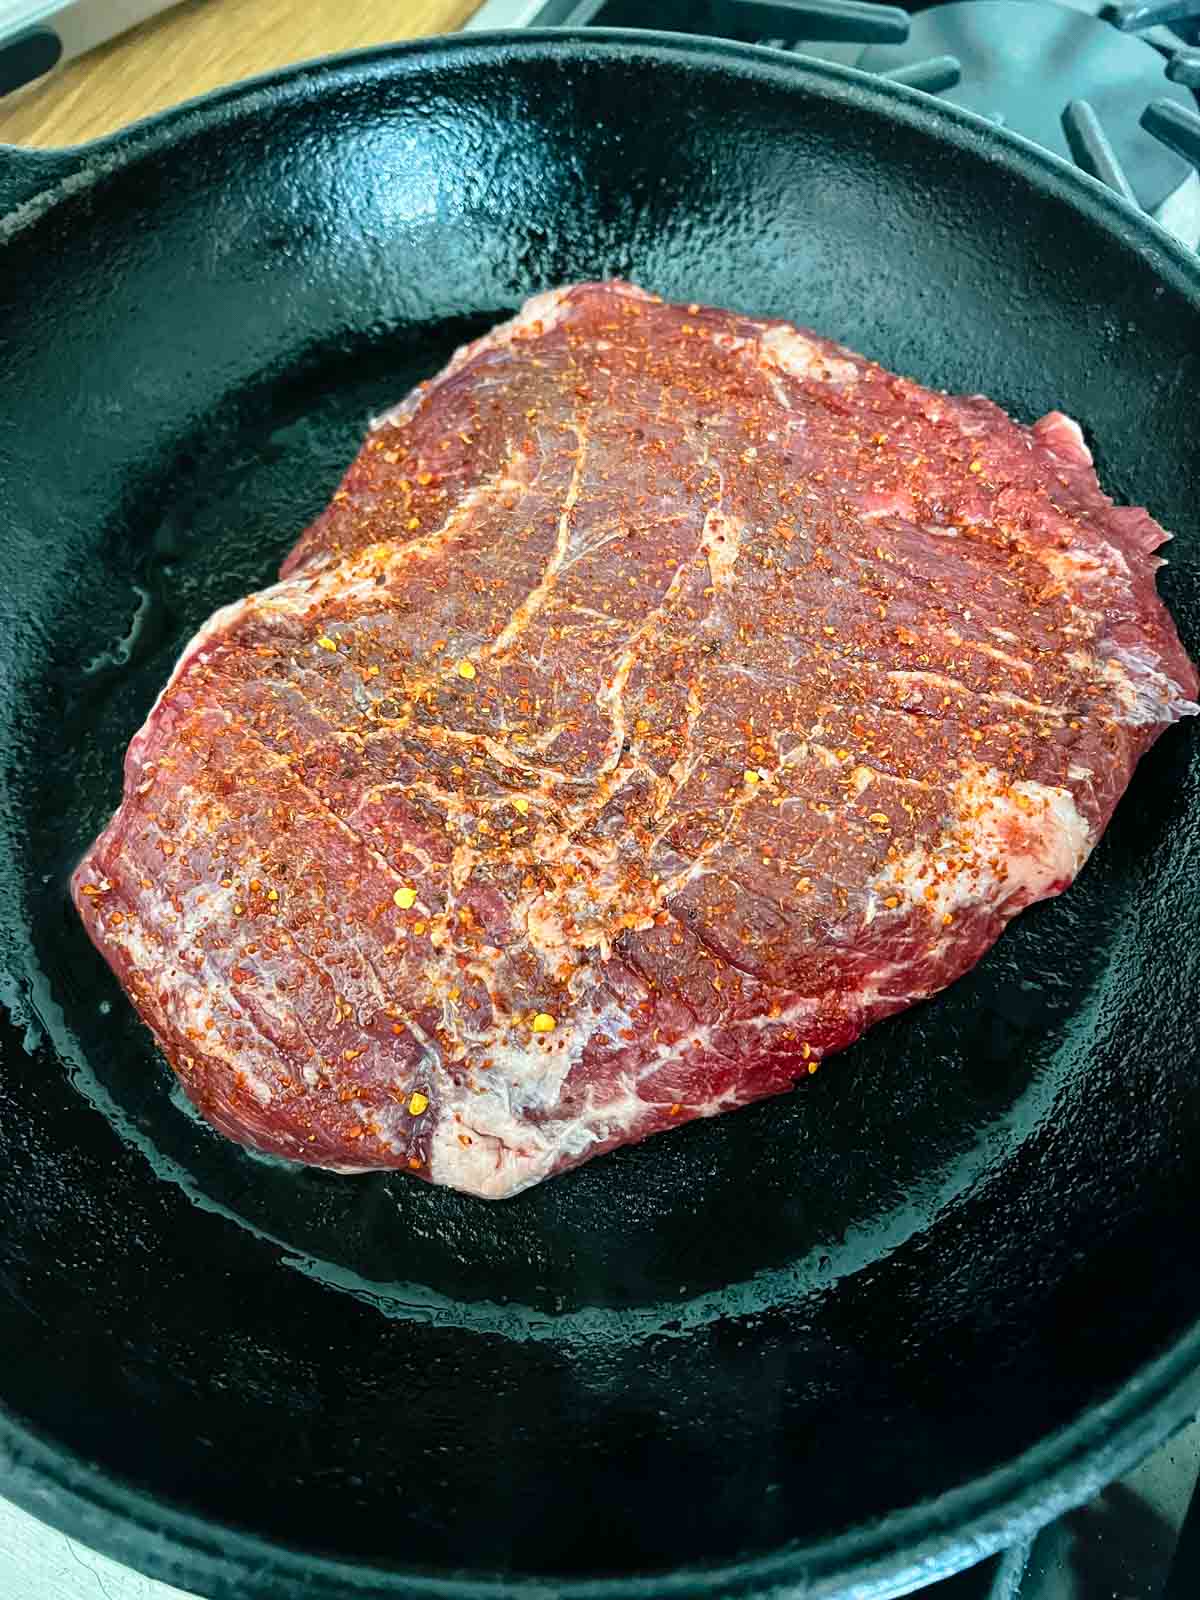 Seasoned flank steak in a skillet.